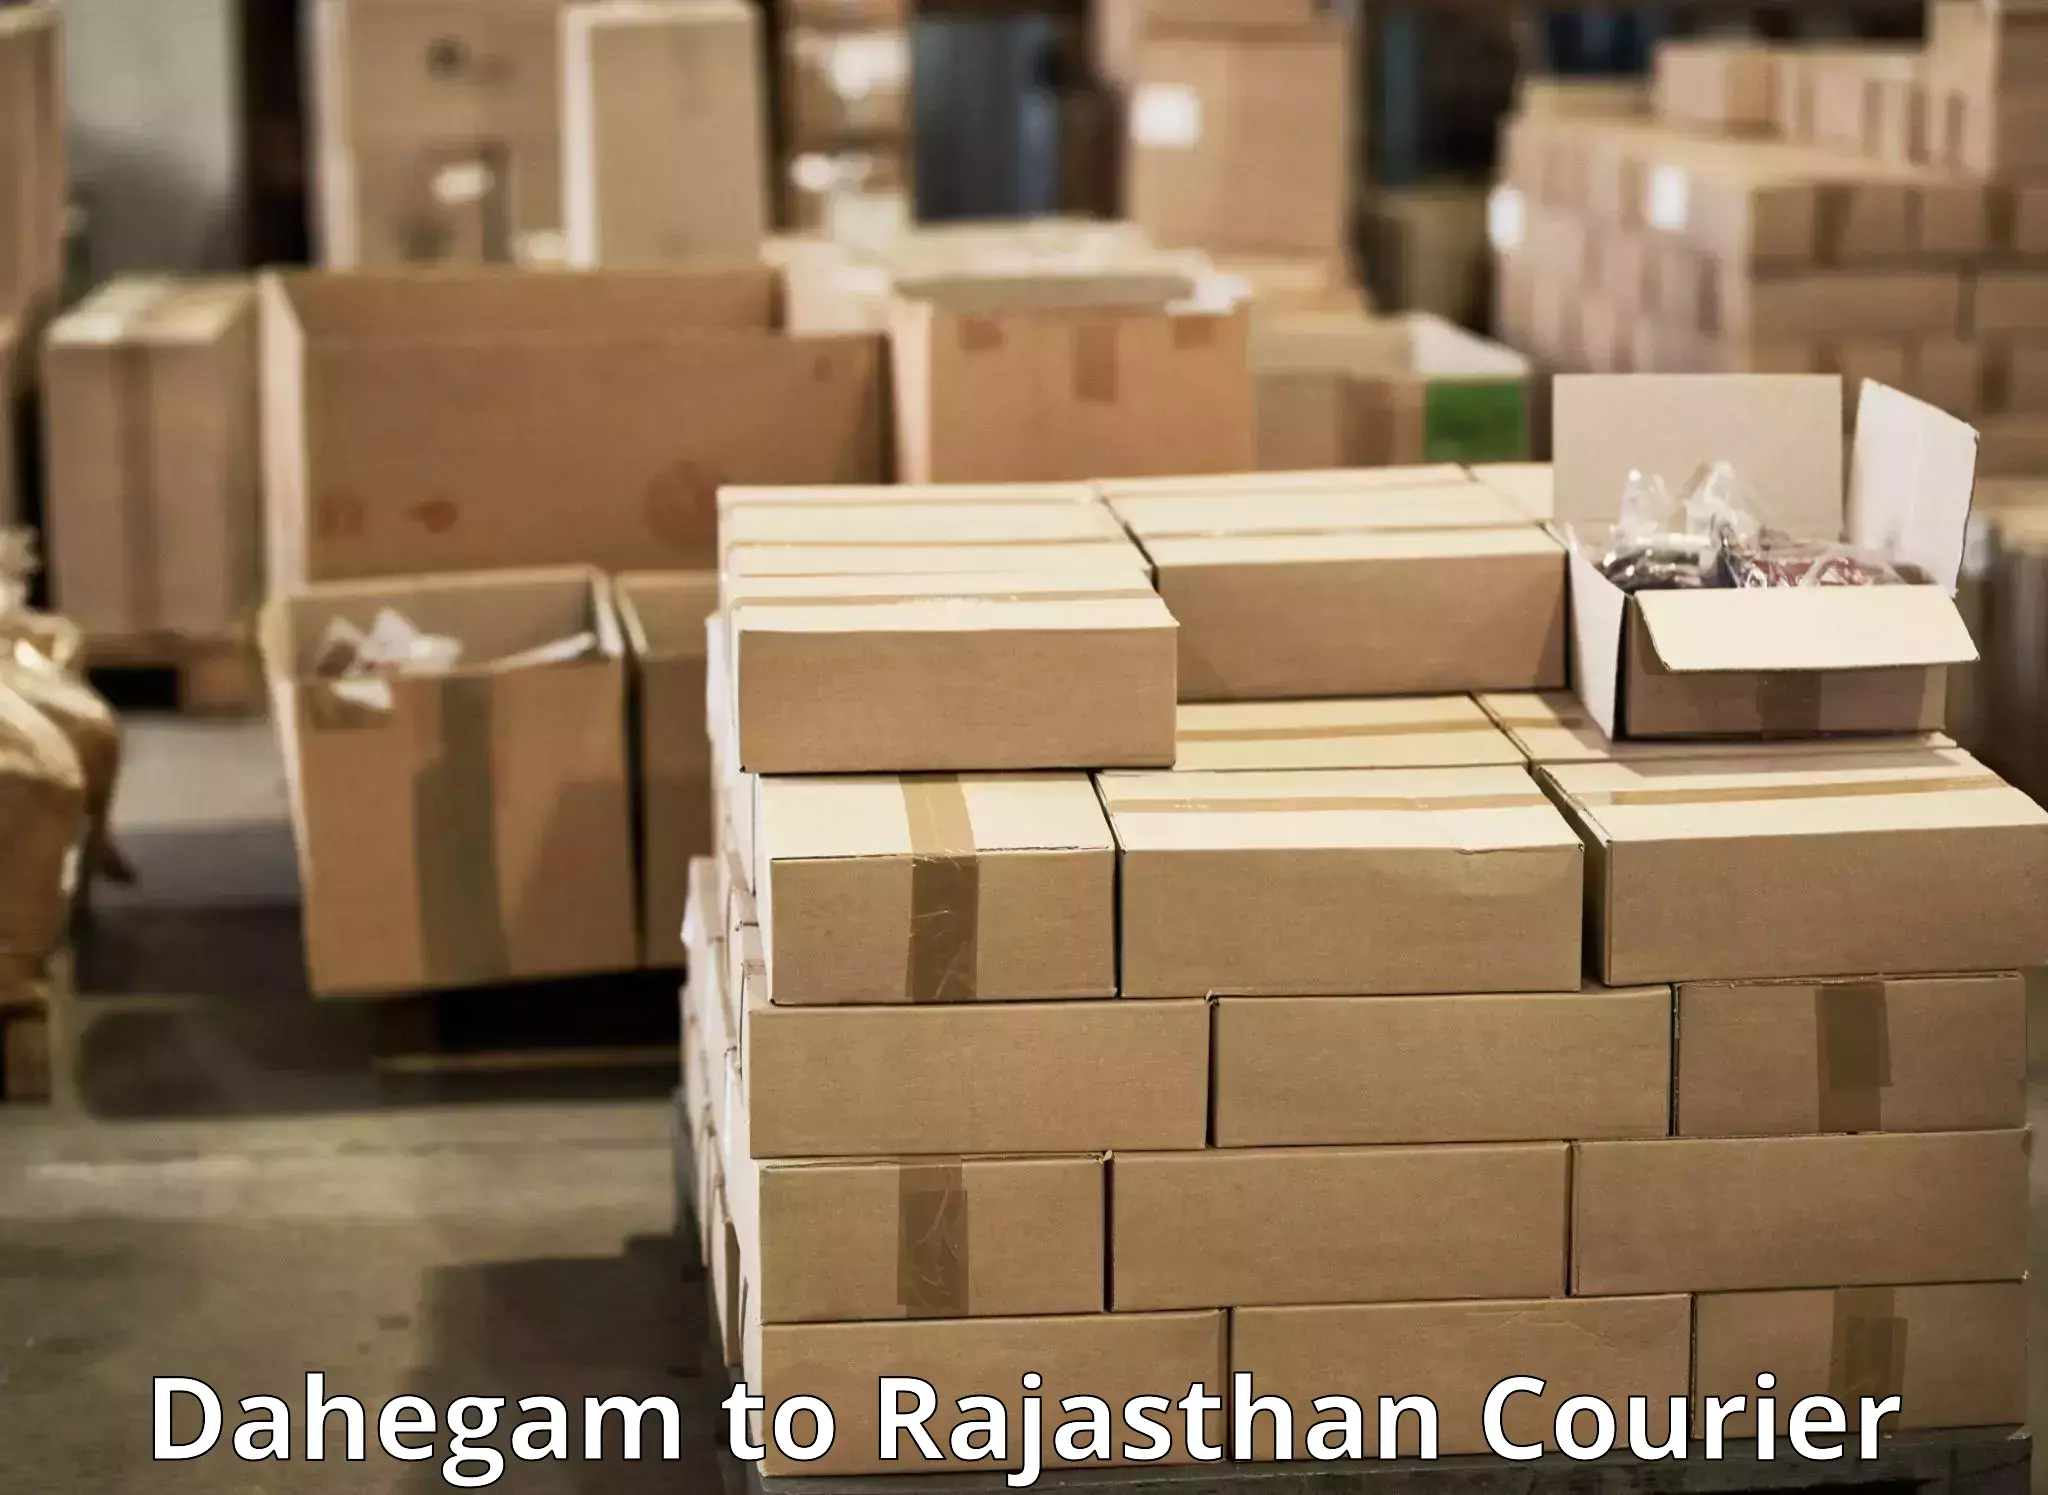 High-capacity parcel service Dahegam to Udaipurwati